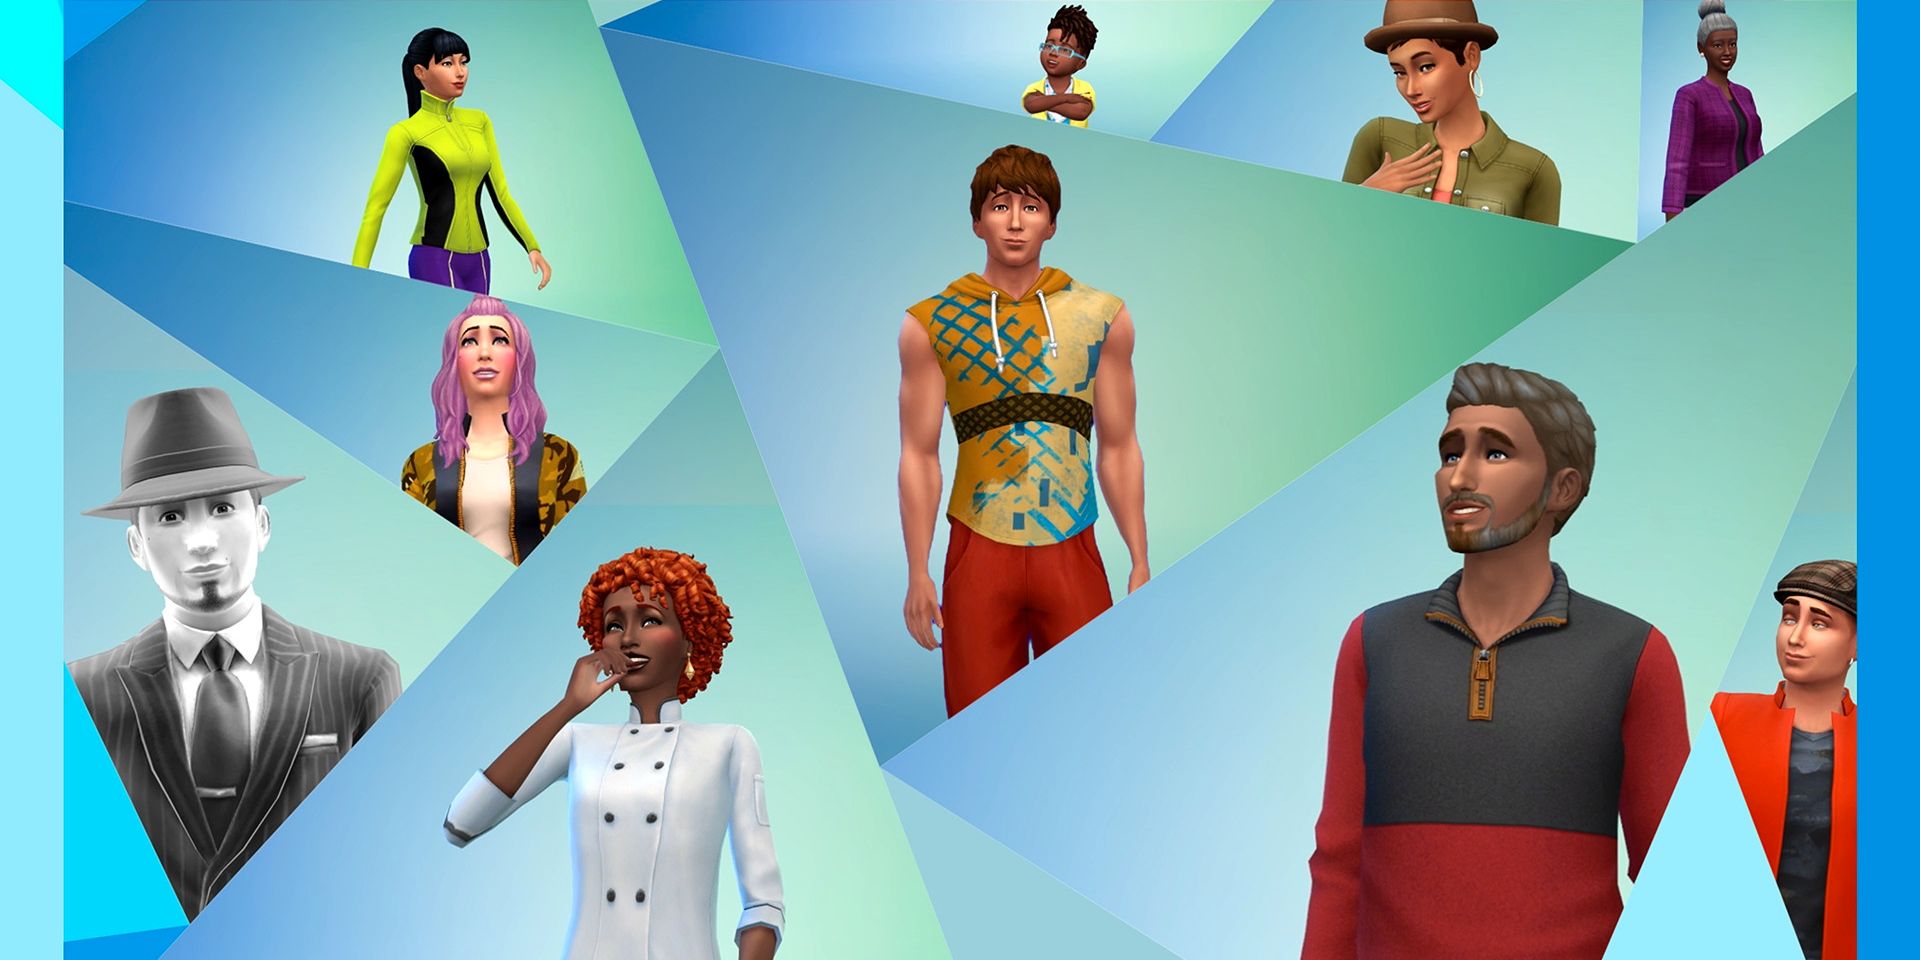 El arte del carro de bienvenida de Sims 4 muestra los terrores de comenzar un nuevo juego